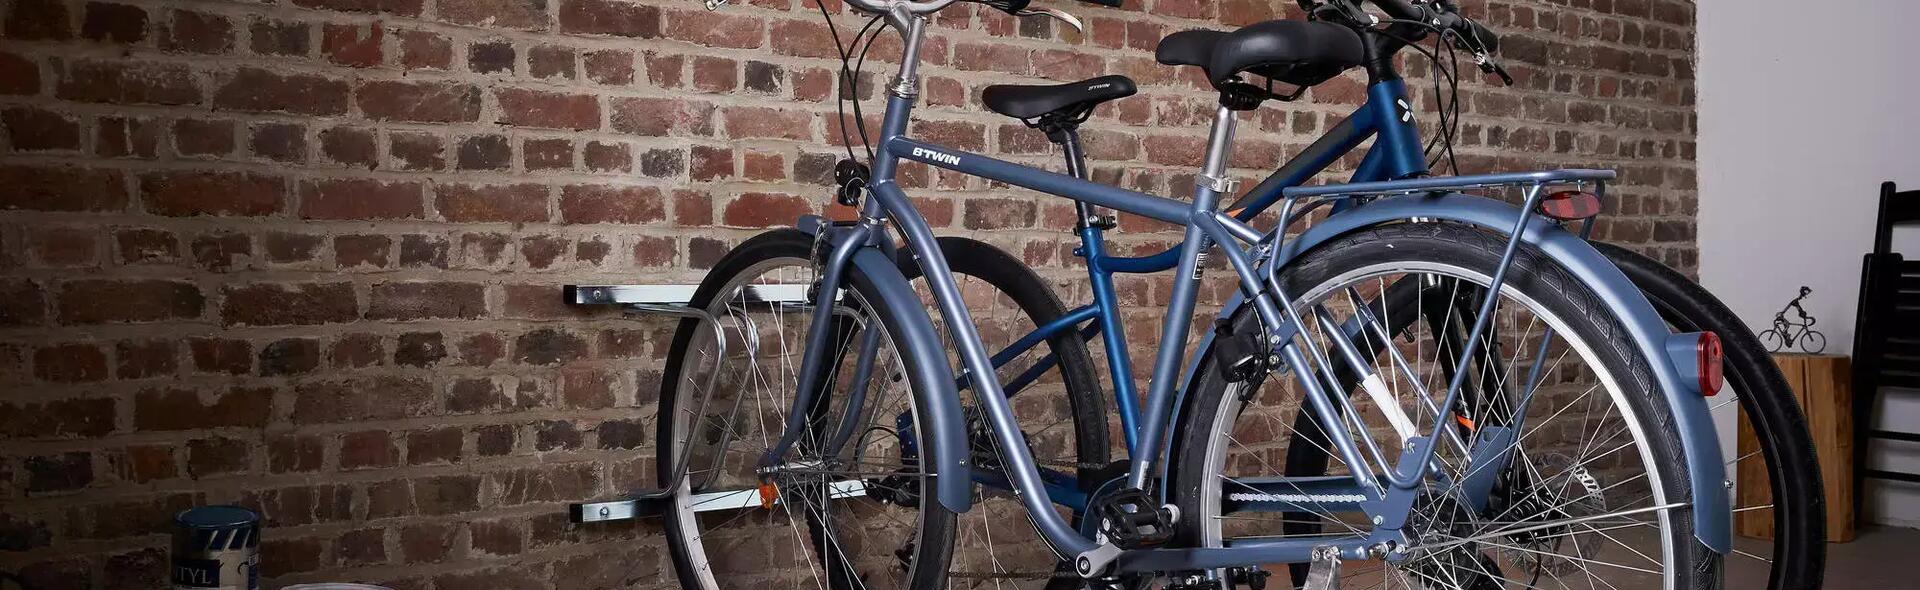 używane rowery miejskie zaparkowane w stojaku rowerowym przymocowanym do ściany w garażu